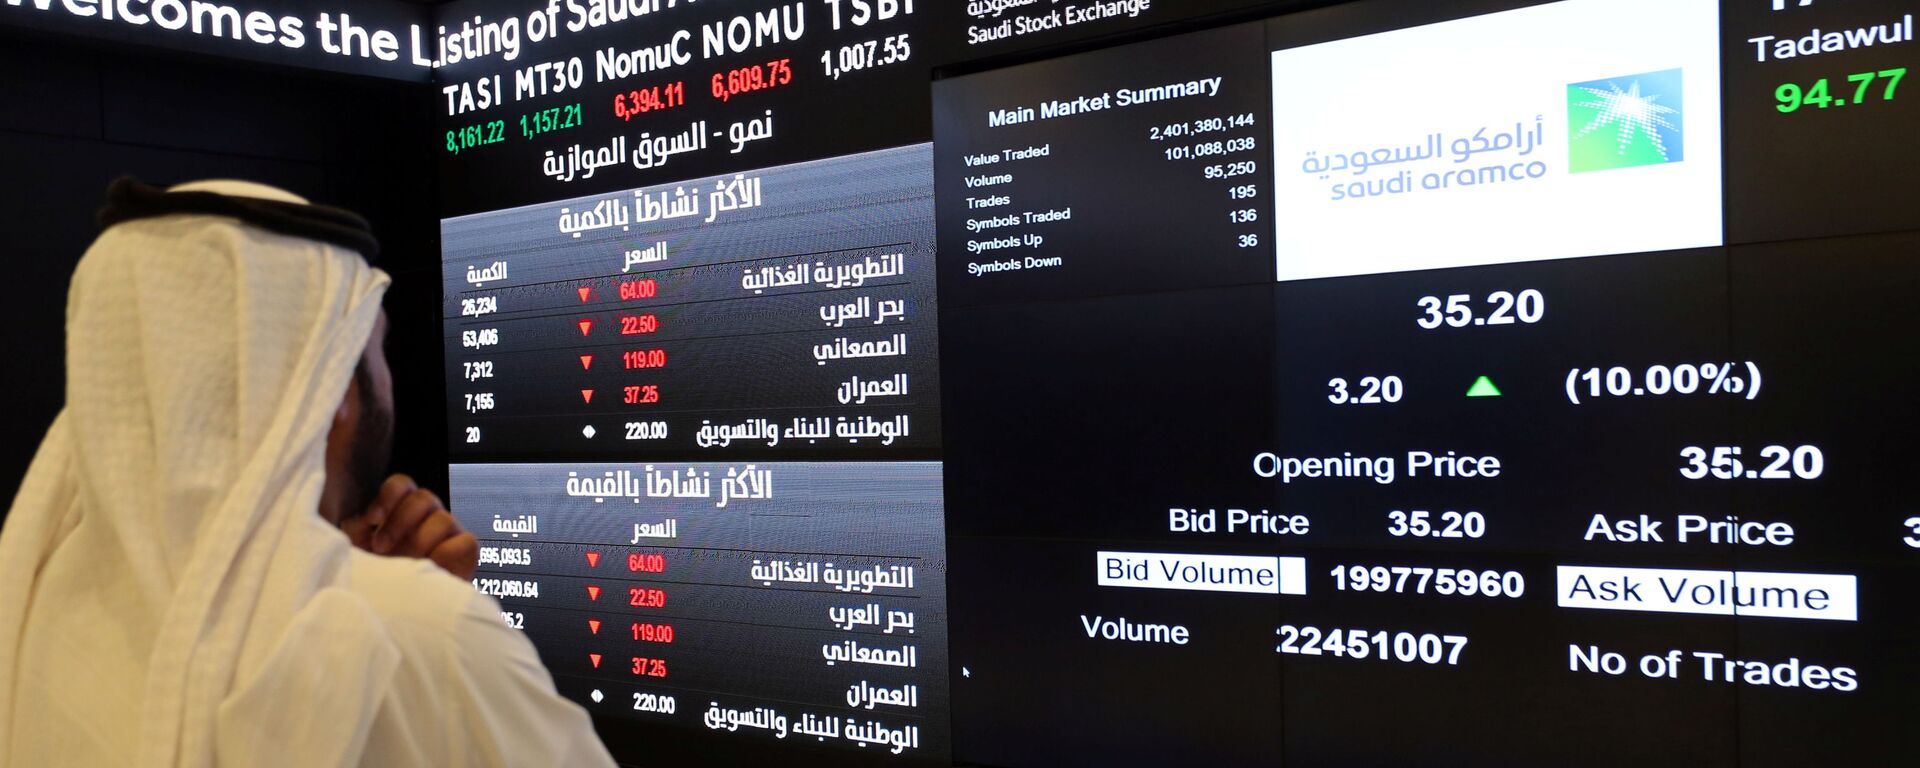 شاشة تعرض معلومات الأسهم في السوق المالية السعودية (تداول)، في الرياض، السعودية 11 ديسمبر 2019 - سبوتنيك عربي, 1920, 29.09.2021